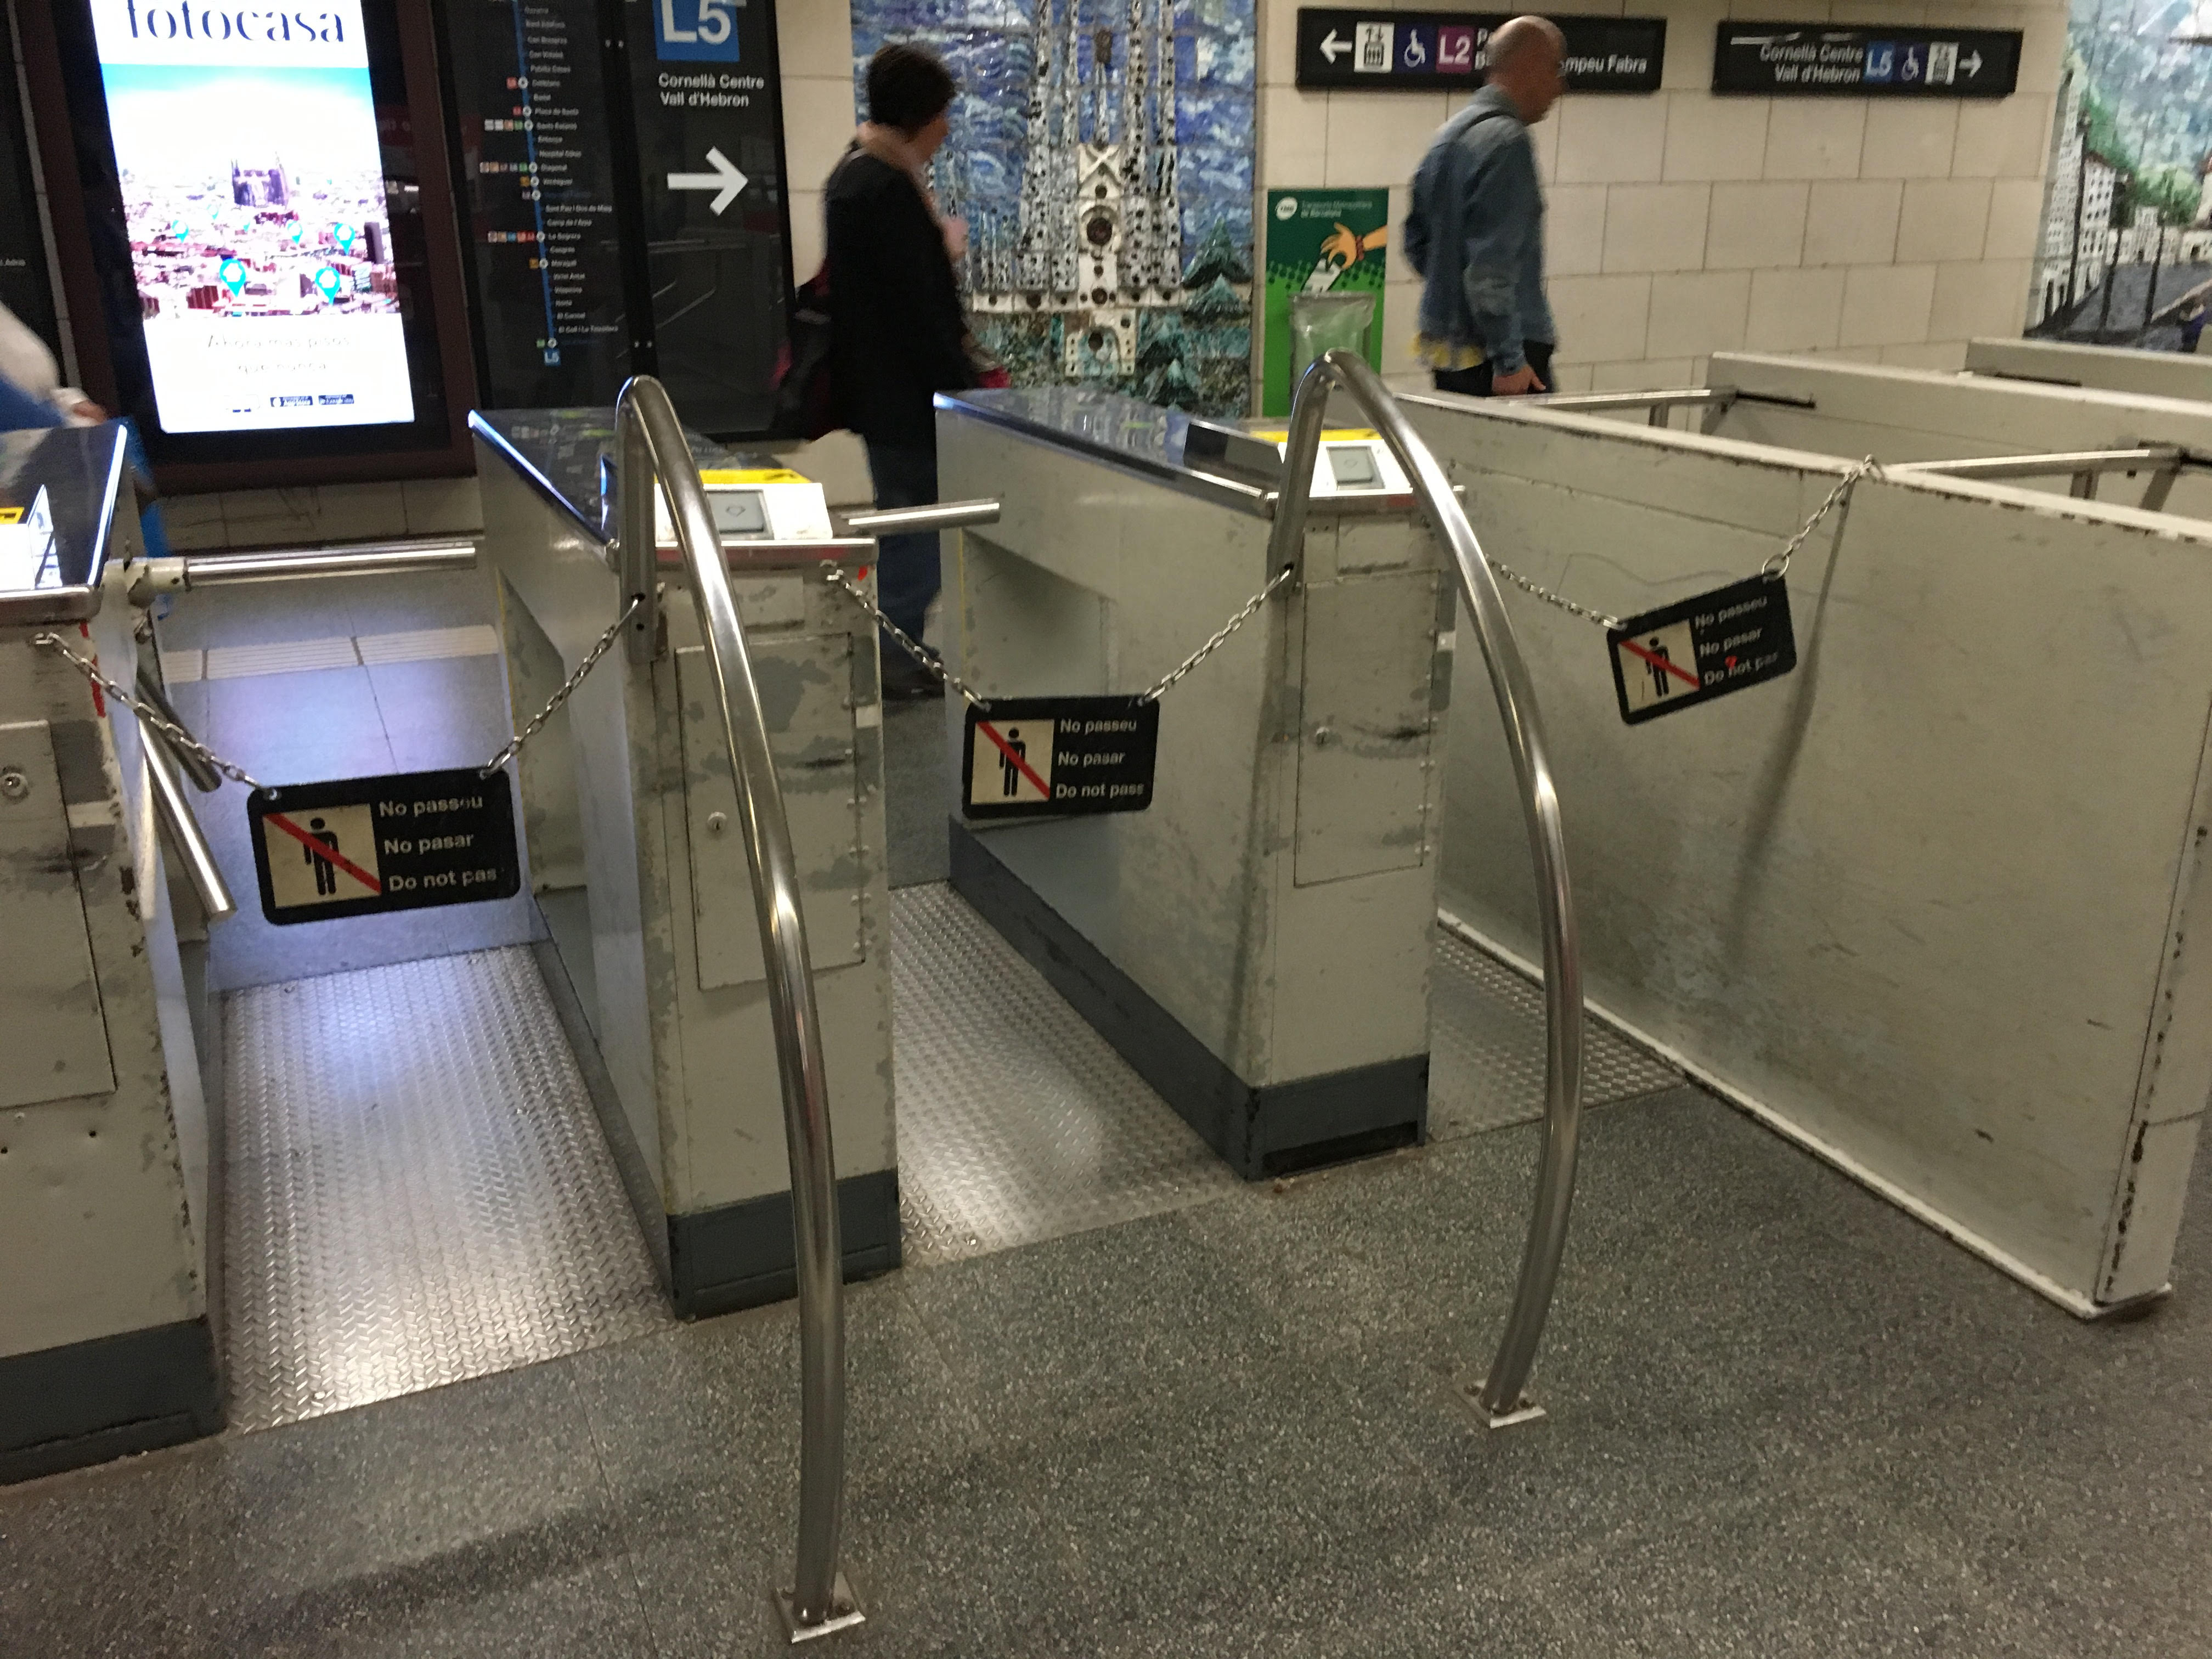 Tres nuevas jornadas de huelga en el Metro coincidiendo con el Sónar